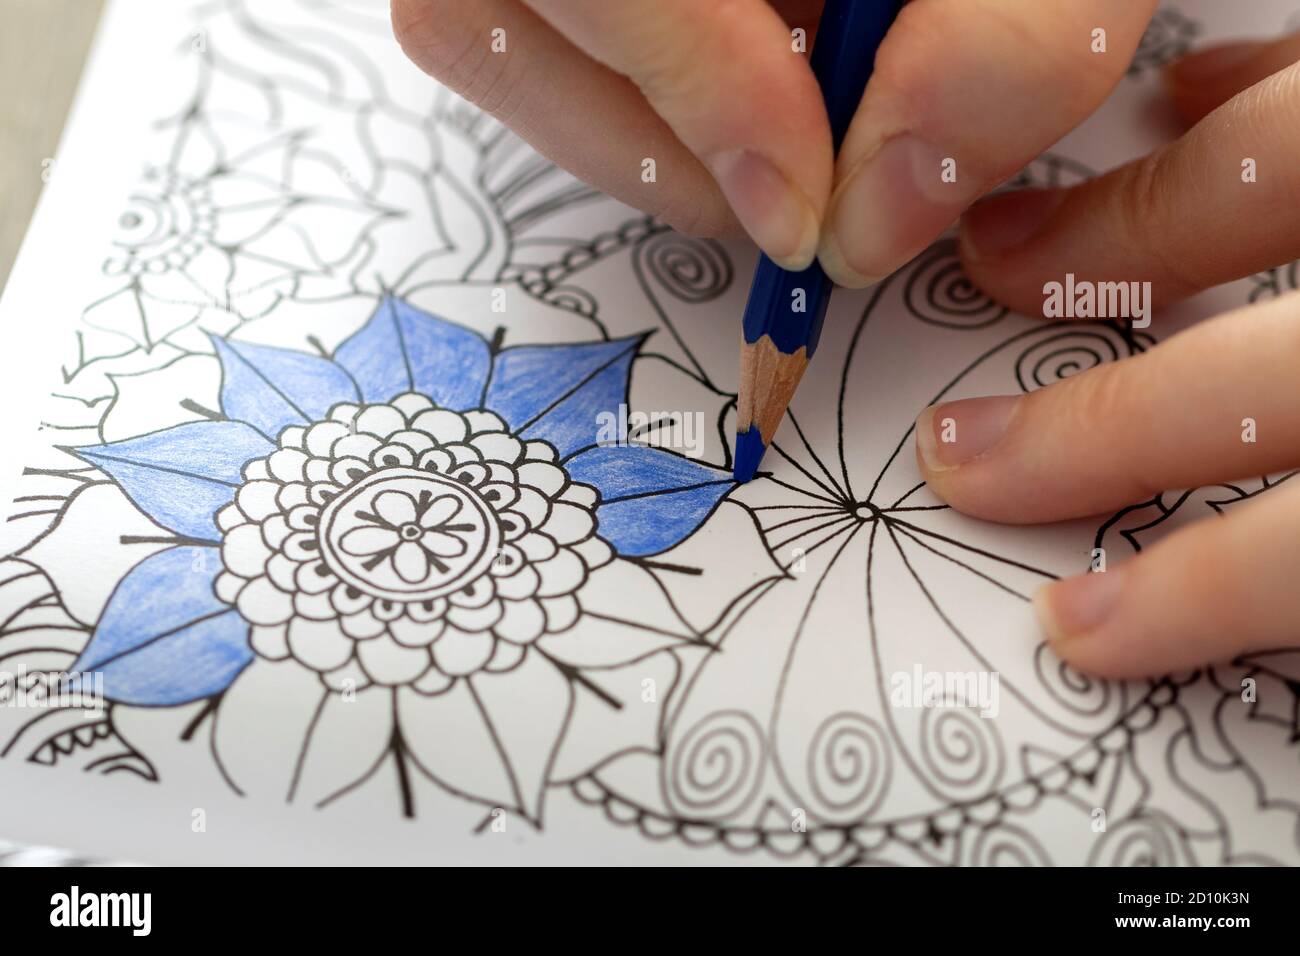 Oben unten ein Porträt einer Hand einer Person, die einen blauen Bleistift hält. Die Person färbt eine Illustration in einem Malbuch für Erwachsene, um zu versuchen Stockfoto